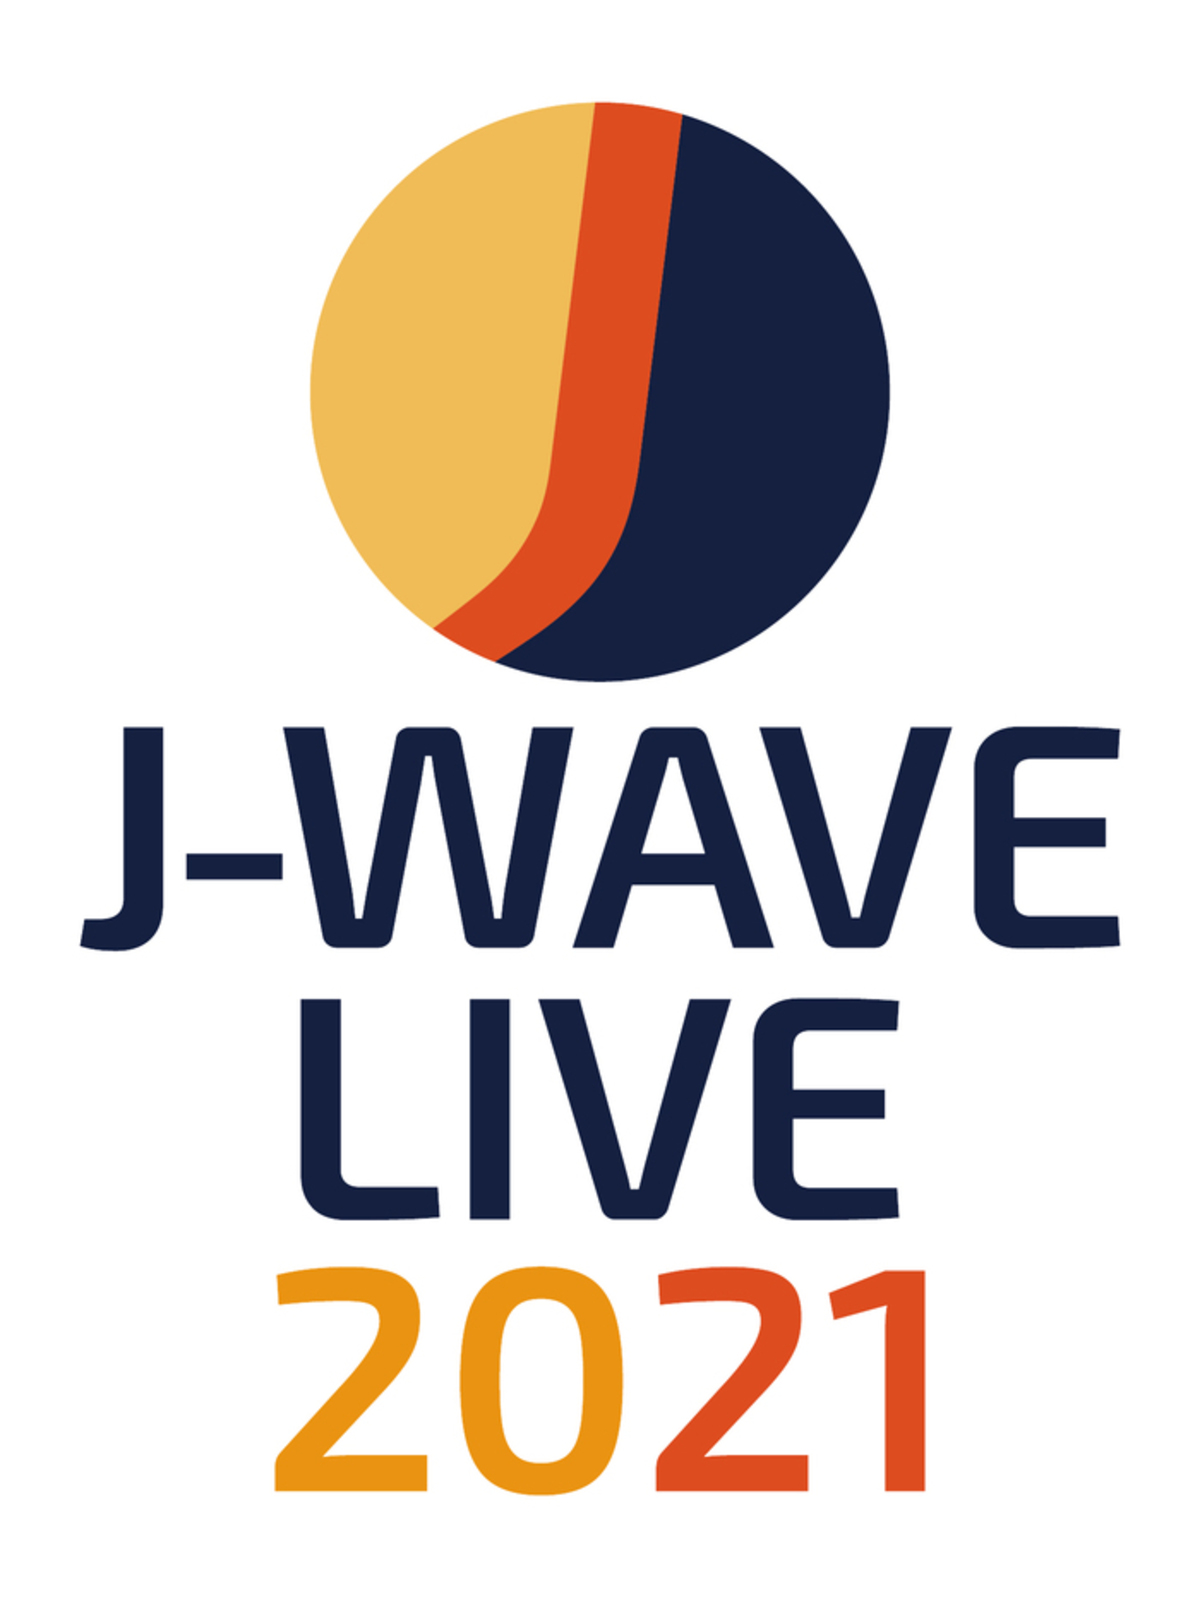 横浜アリーナにて7 17 18開催の J Wave Live 21 追加アーティストにマカロニえんぴつ 緑黄色社会 Vaundy Juju決定